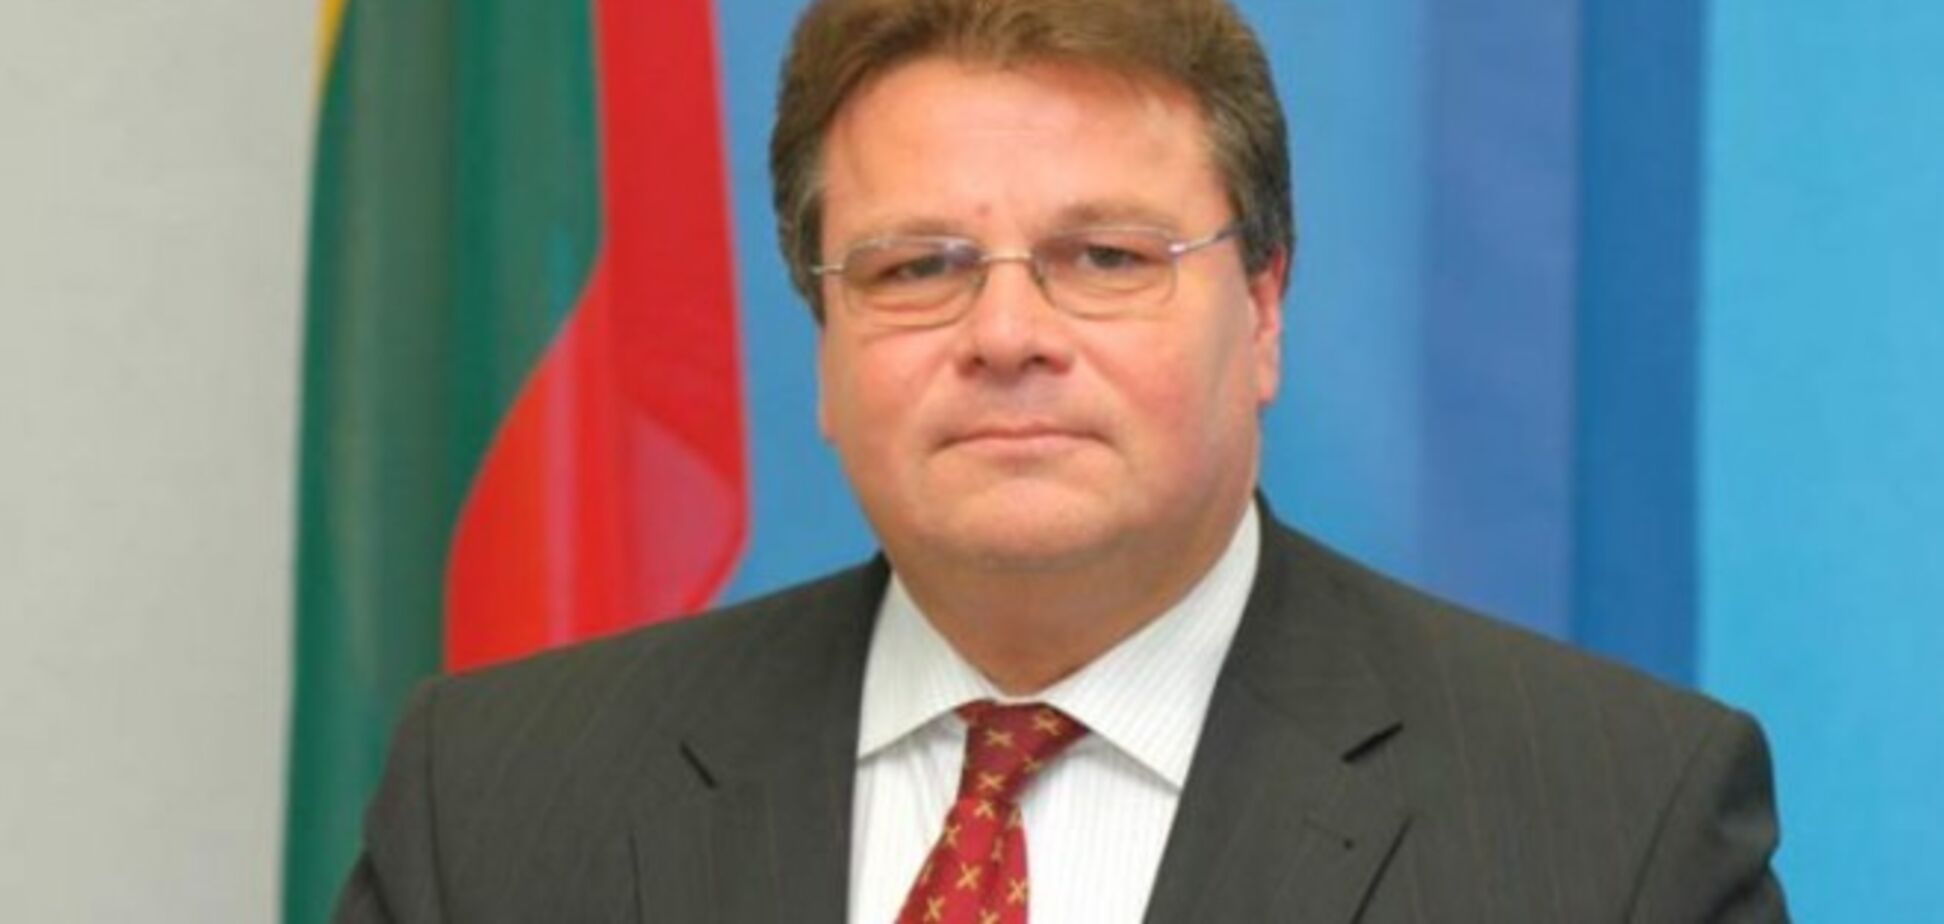 Глава МИД Литвы предложил 'вознаградить' террористов санкциями